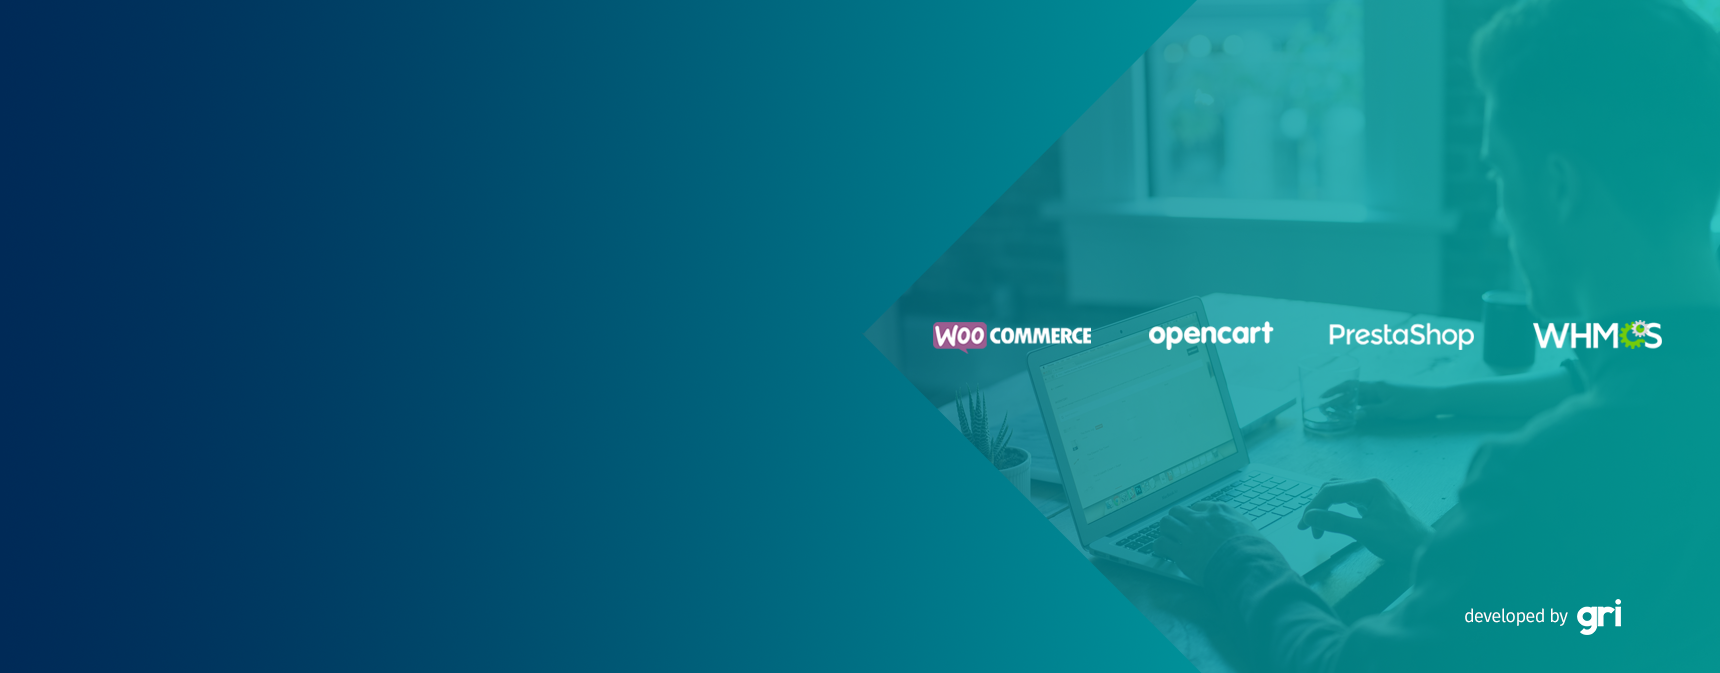 gri.net'te Woocommerce, Opencart ve Whmcs Açık Kaynak E-Ticaret Paketleri Üye İş yerlerimize Özel Ücretsiz!